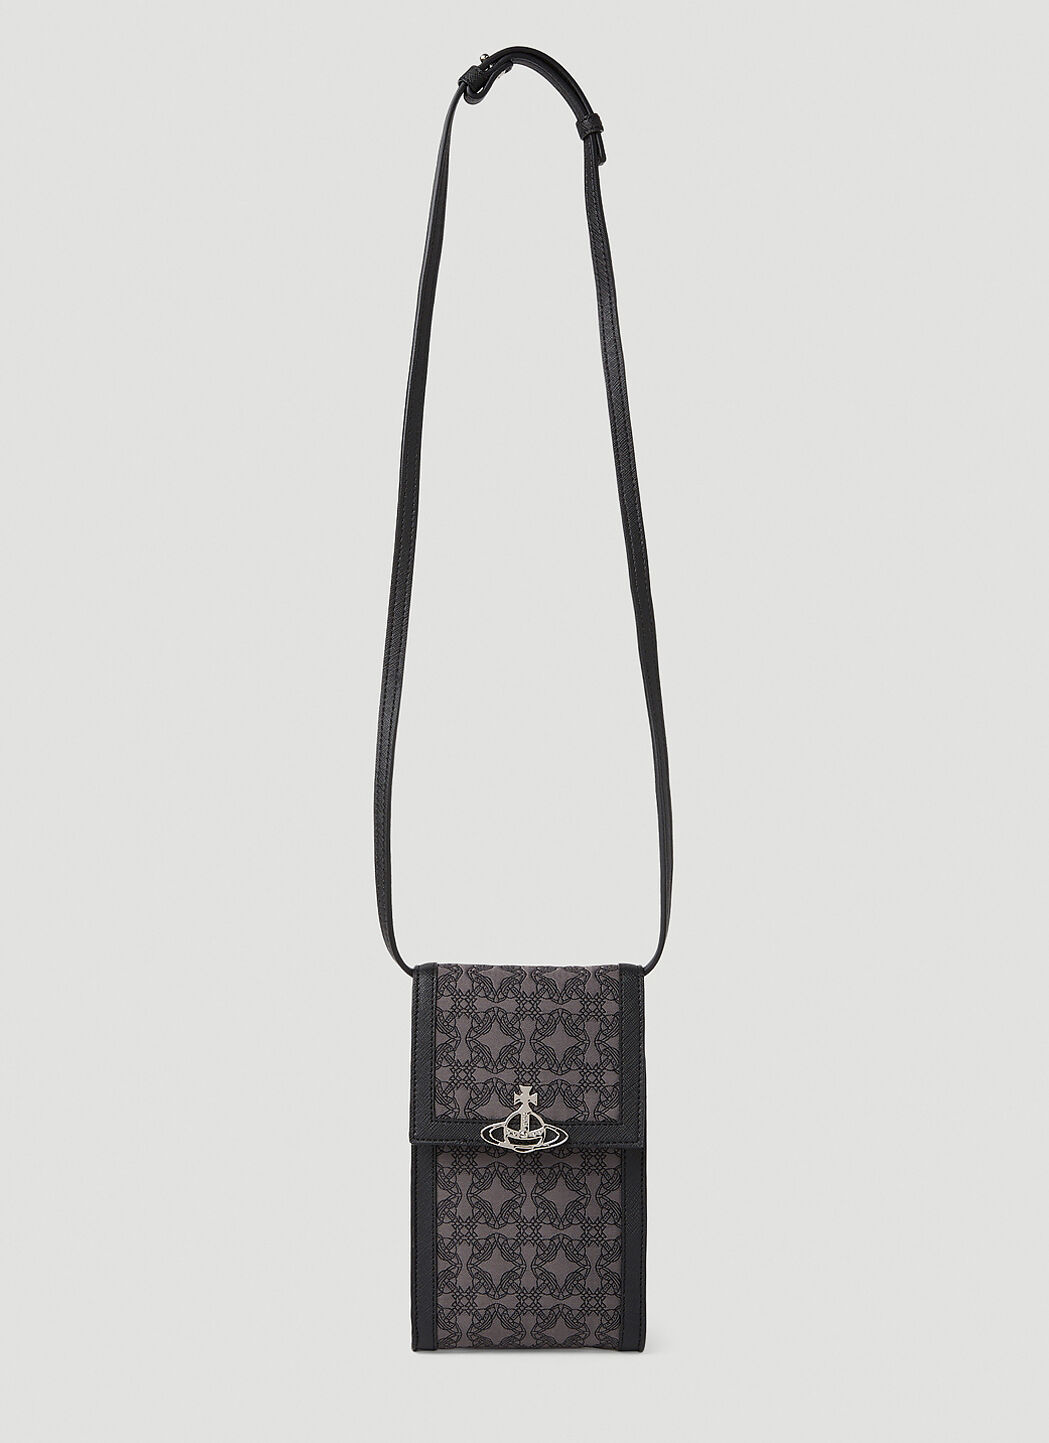 Vivienne Westwood Re-Jacquard Orborama Phone Crossbody Bag in